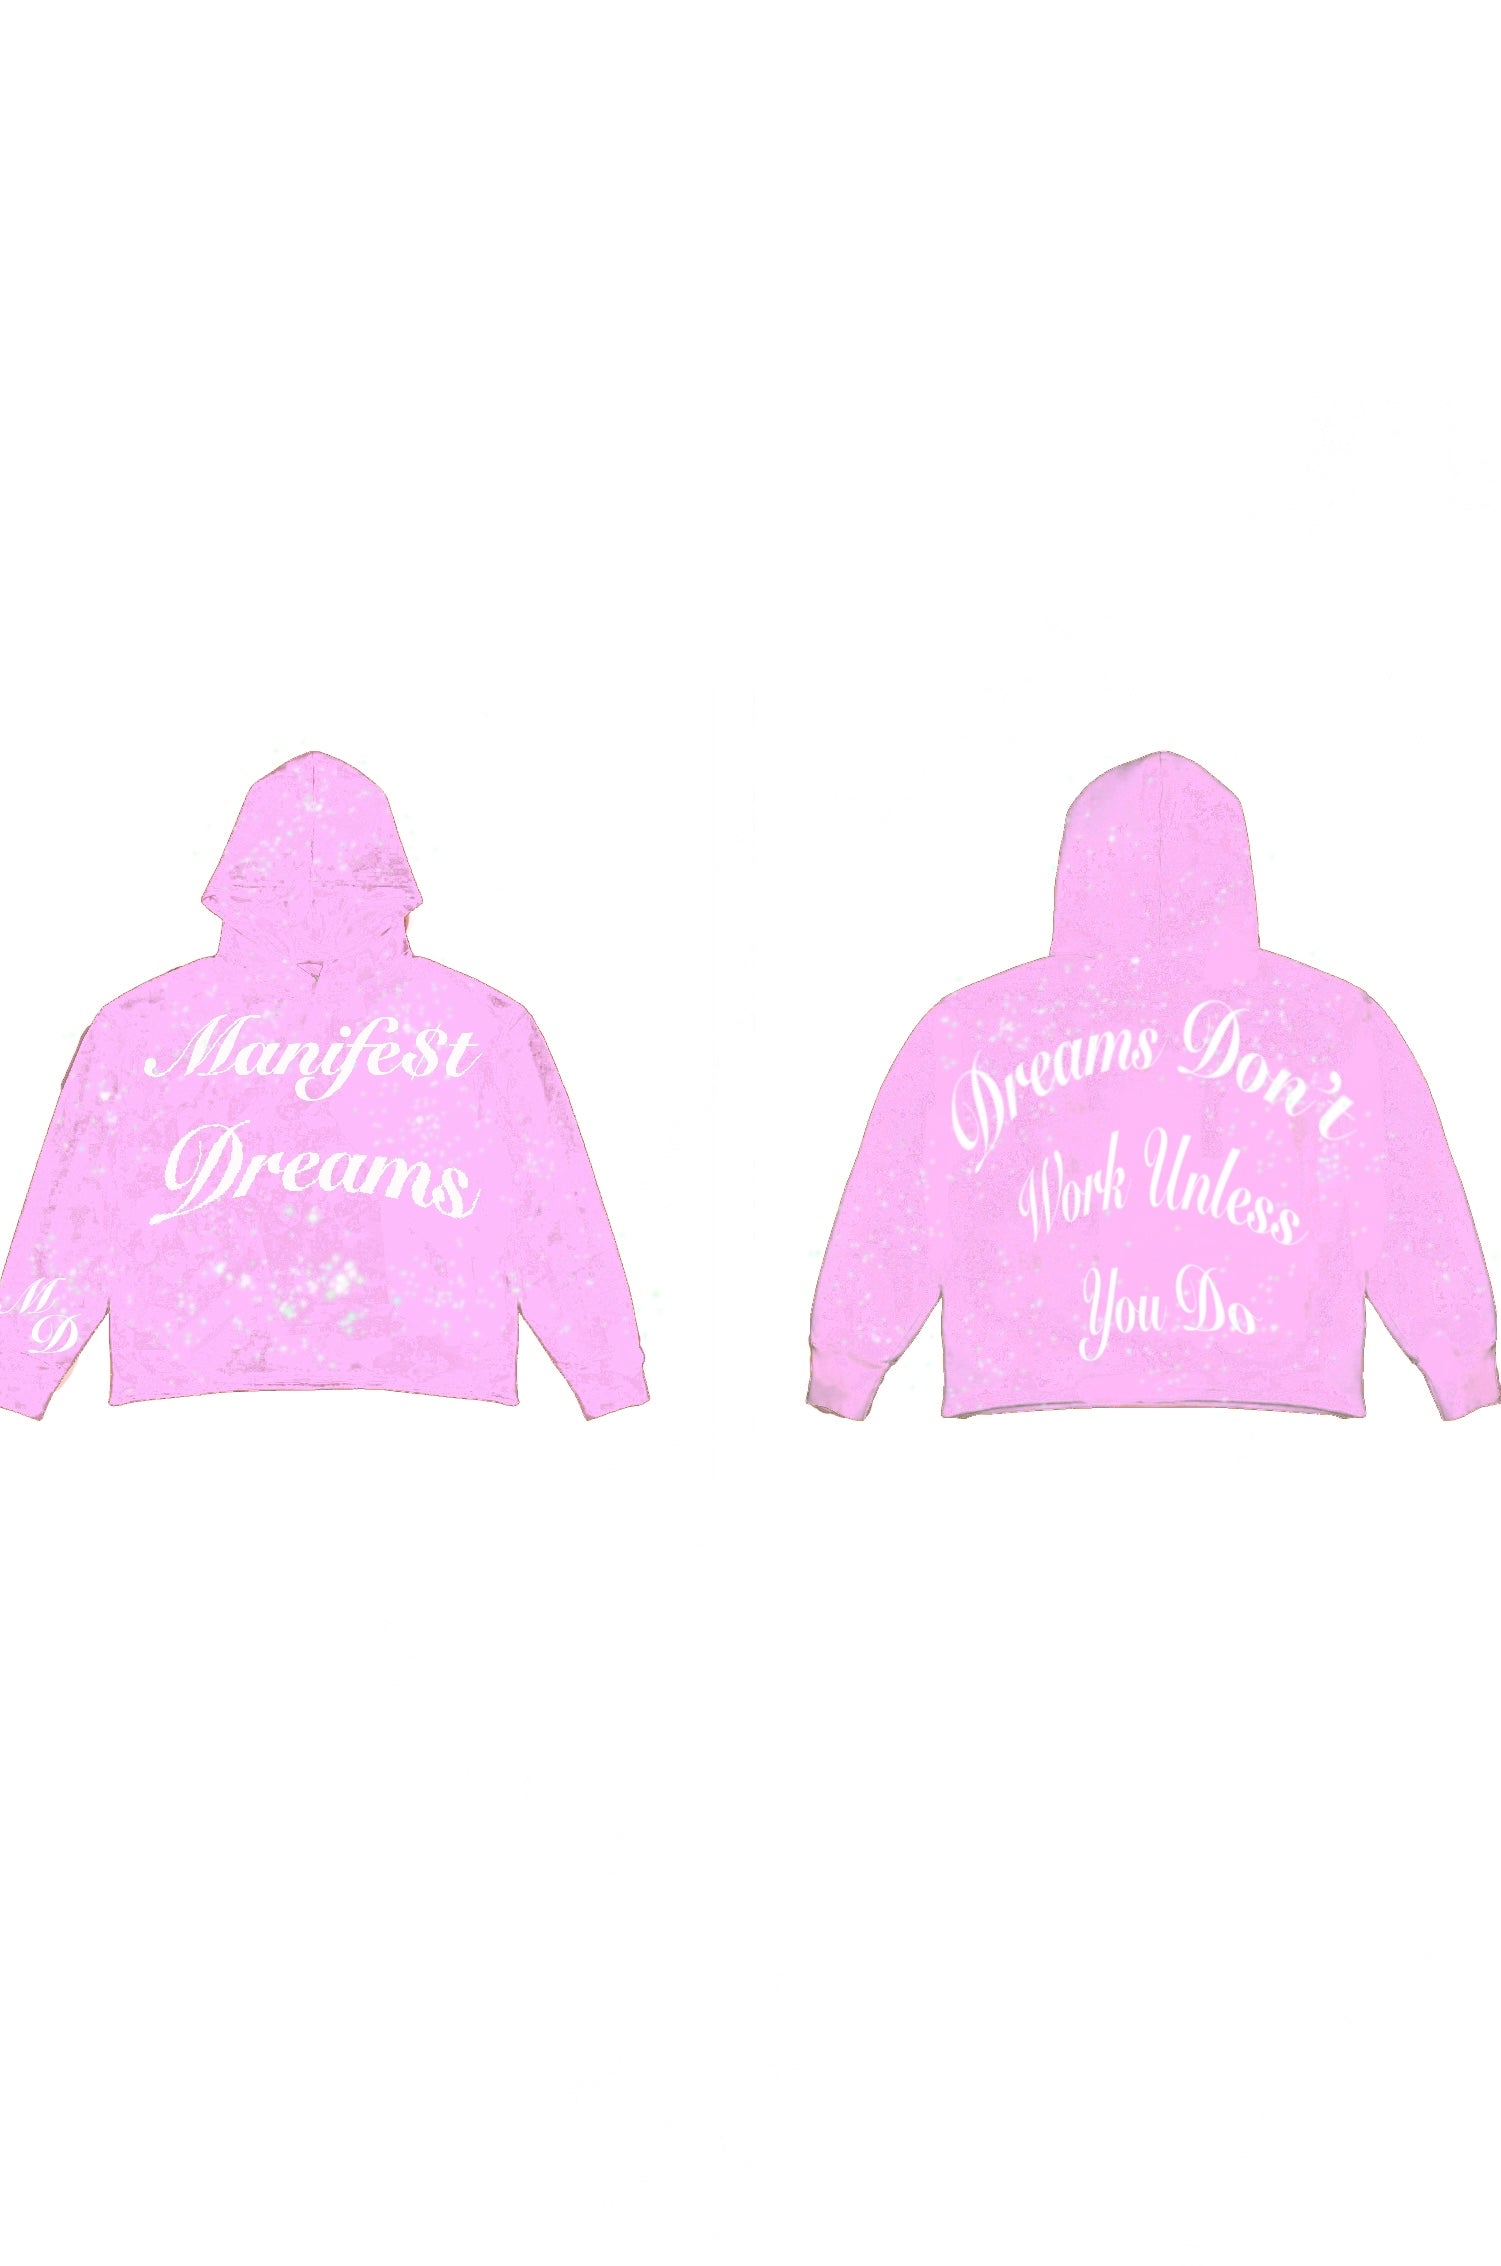 Manifest Dreams pink hoodie